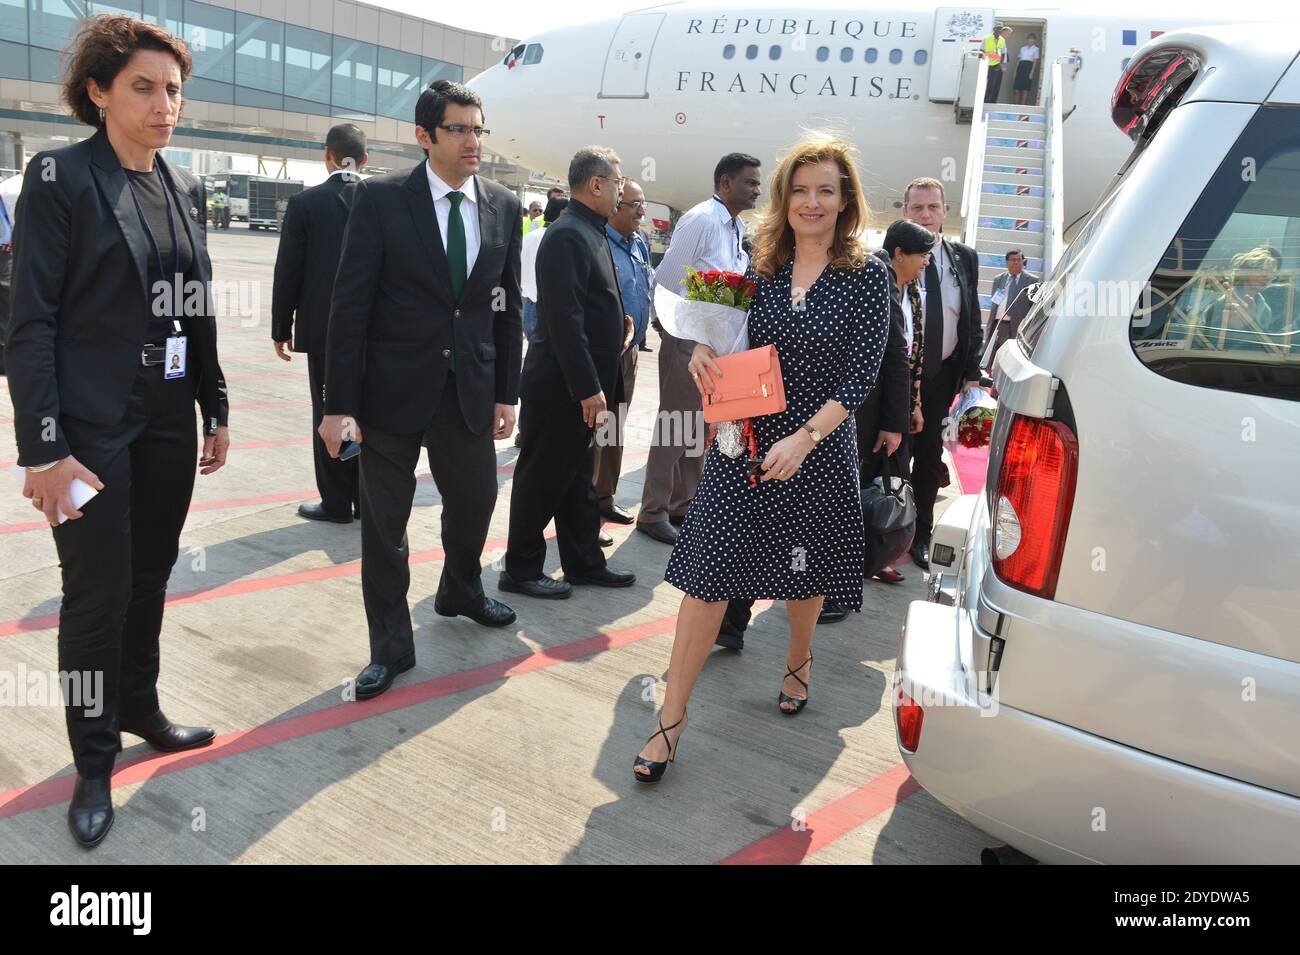 Il presidente francese Francois Hollande e Valerie Trierweiler arrivano all'aeroporto di Bombay, India, il 15 febbraio 2013. Foto di Christophe Guibbaud/ABACAPRESS.COM Foto Stock